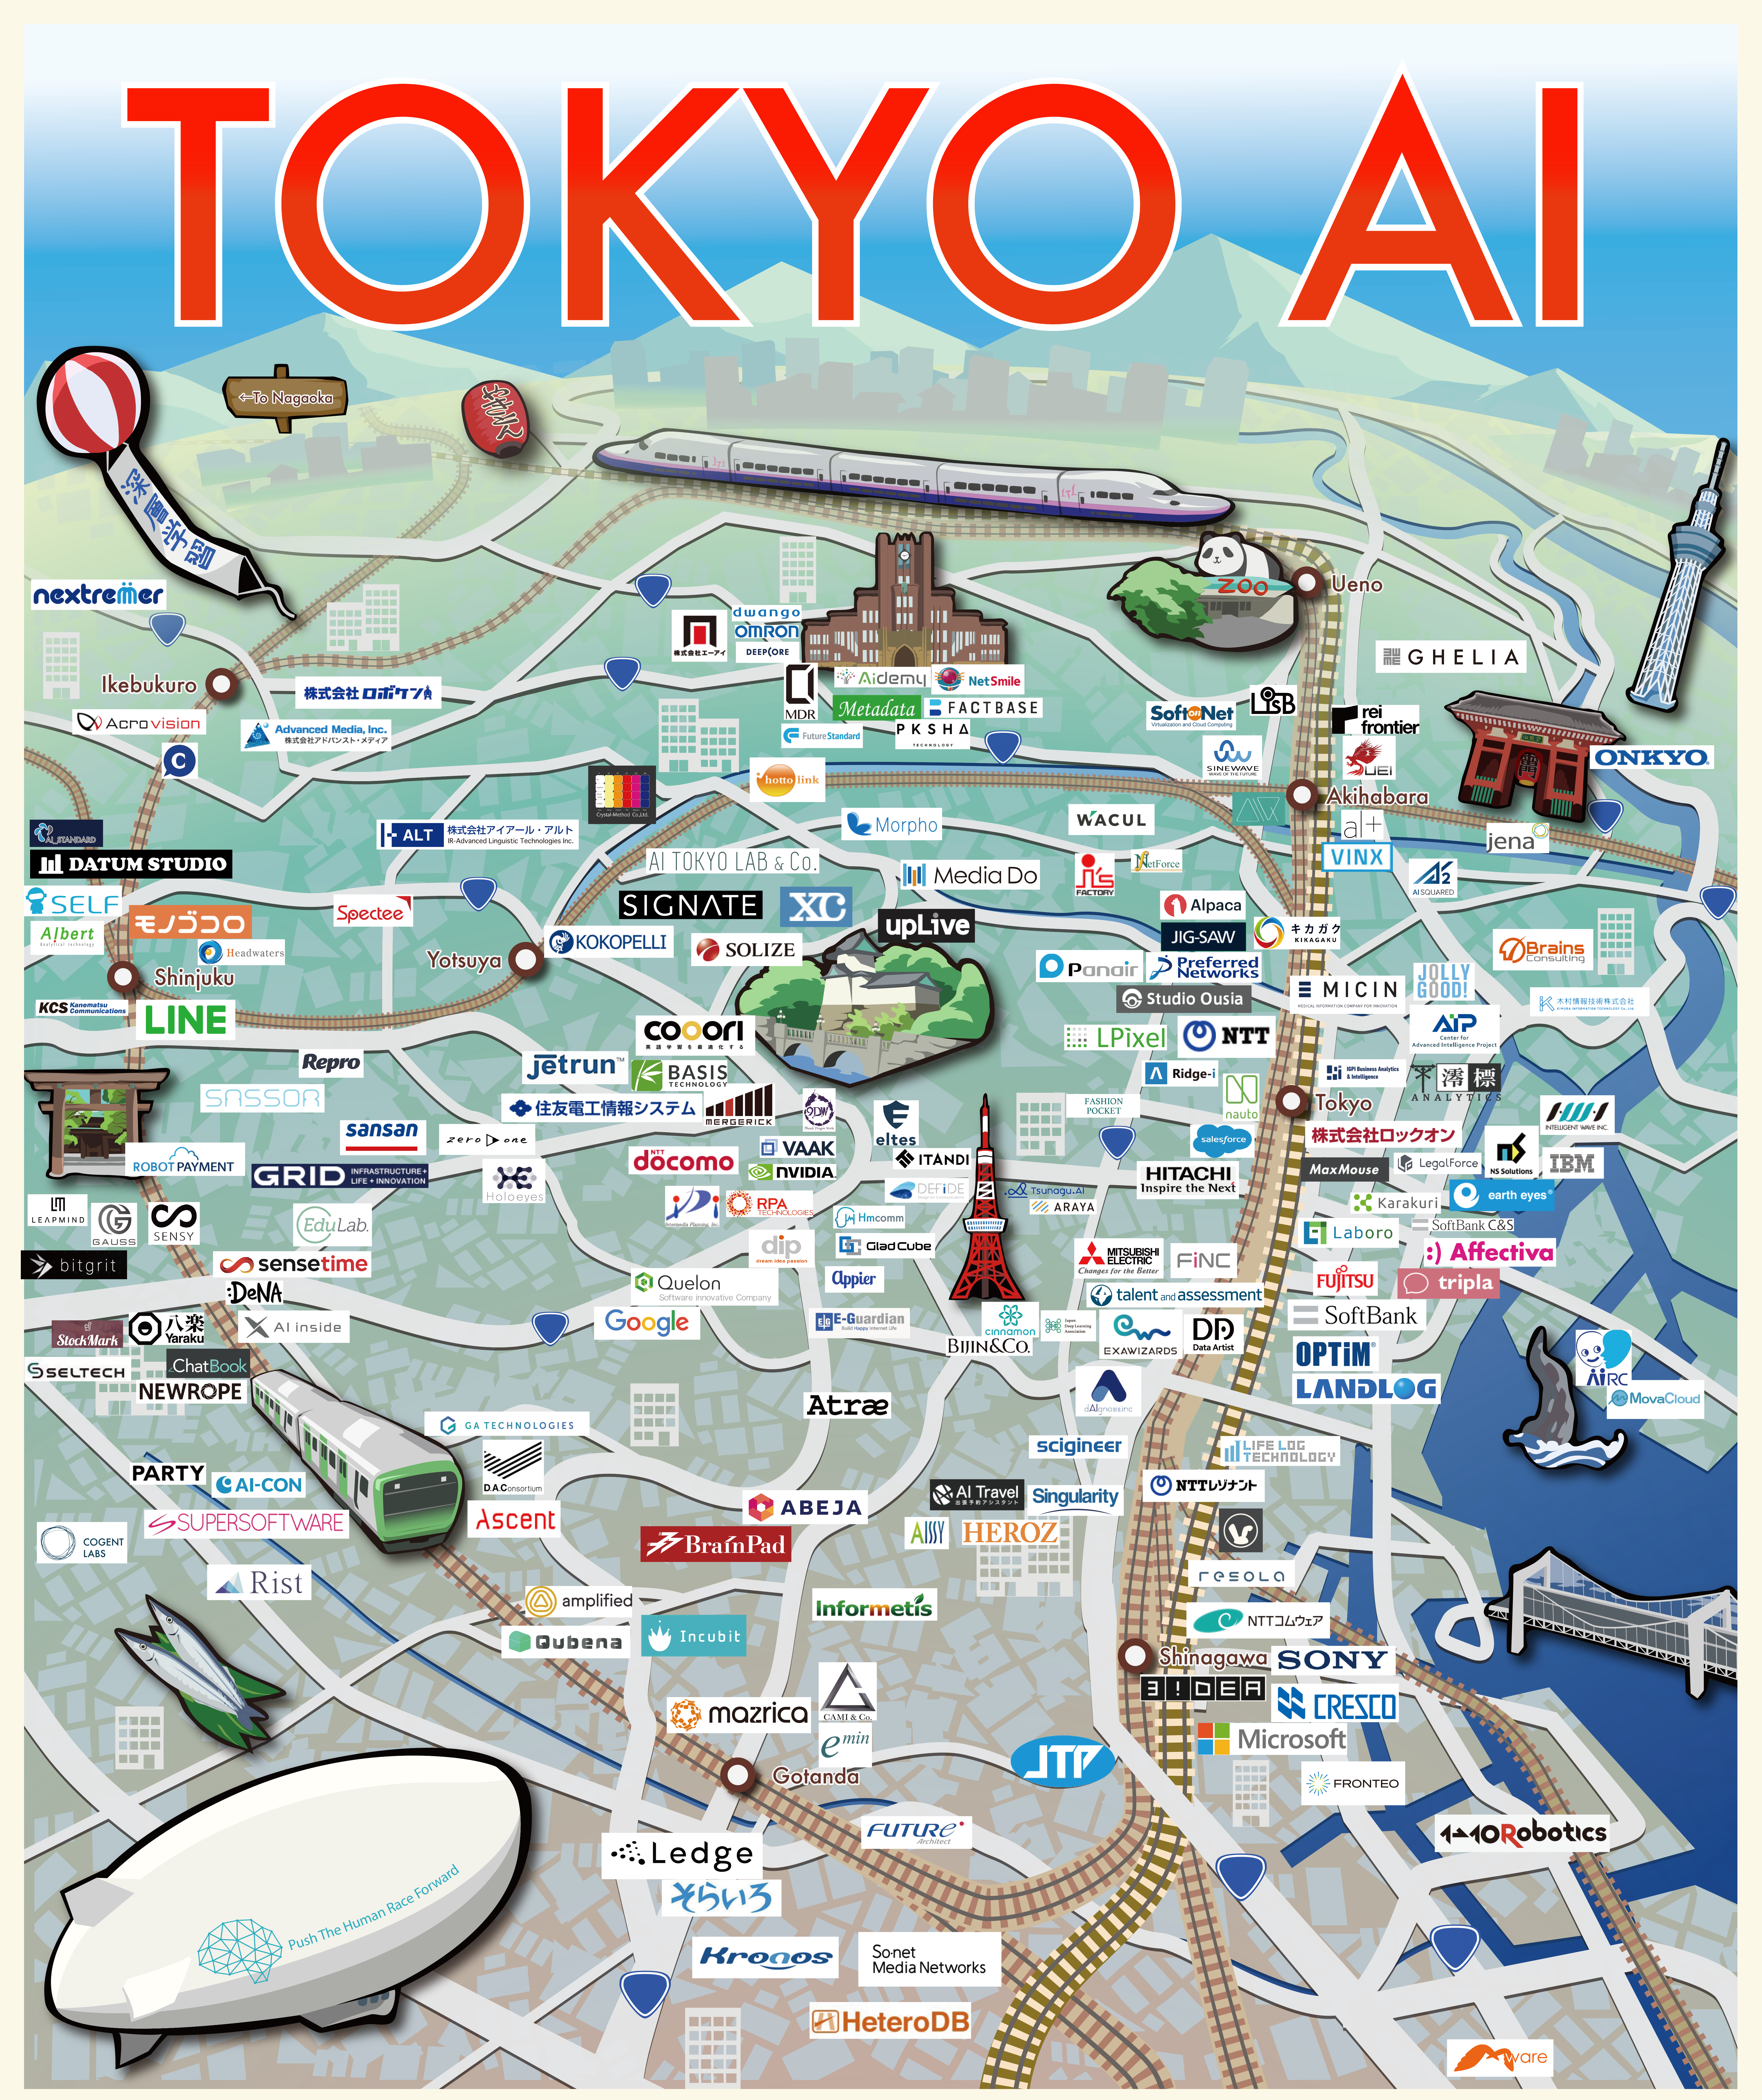 全169社 東京にあるai企業をマップにした Tokyo Ai Map を公開 多くのai企業が本郷 渋谷 東京に集中 Ai専門ニュースメディア Ainow